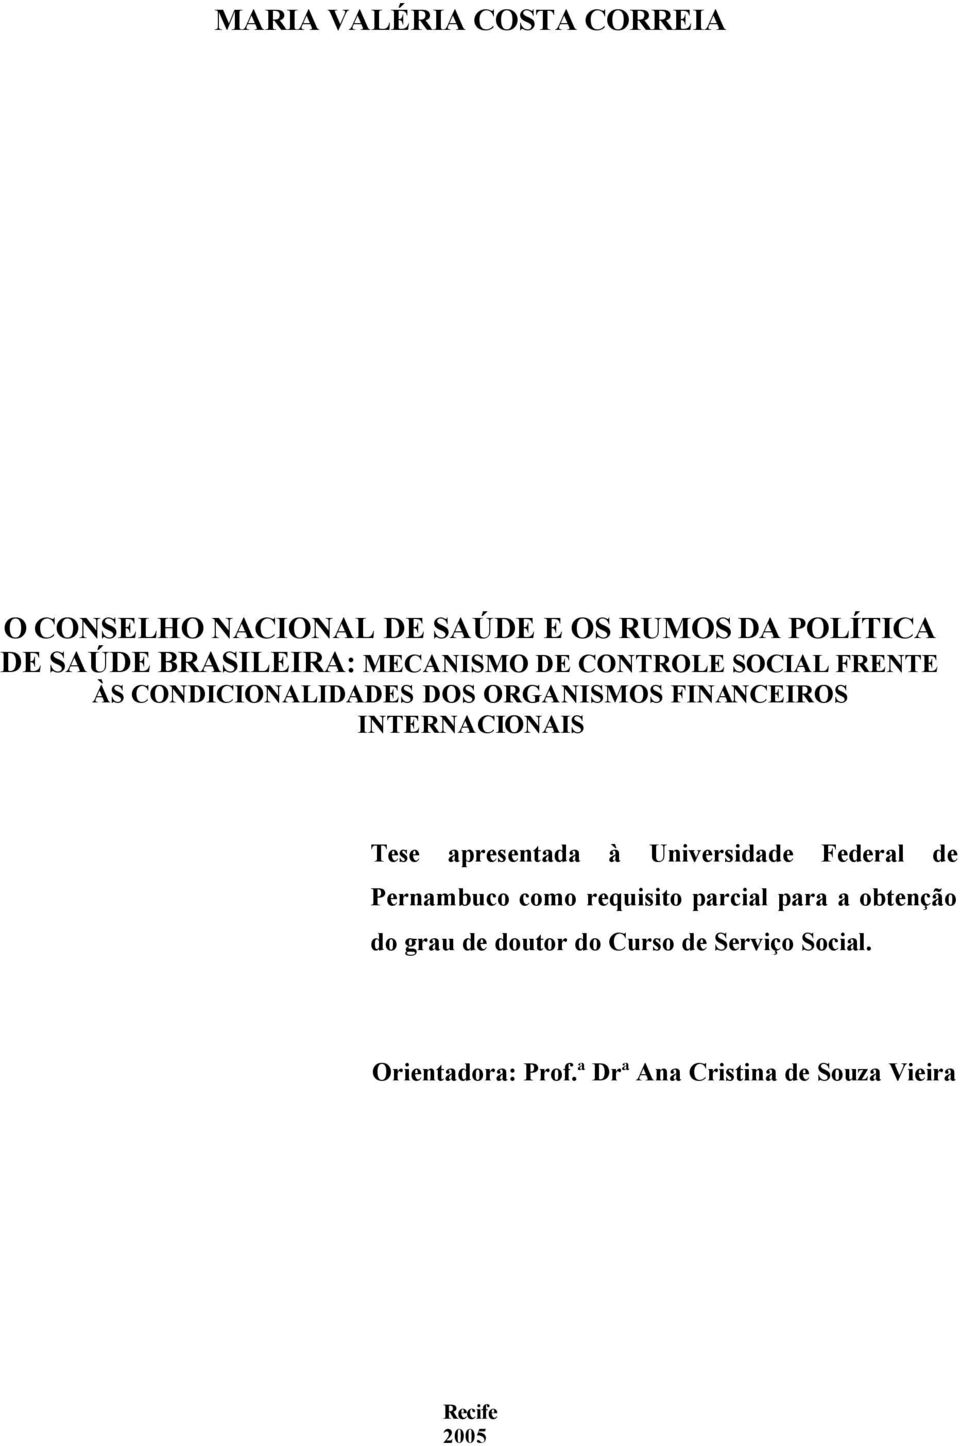 Tese apresentada à Universidade Federal de Pernambuco como requisito parcial para a obtenção do grau